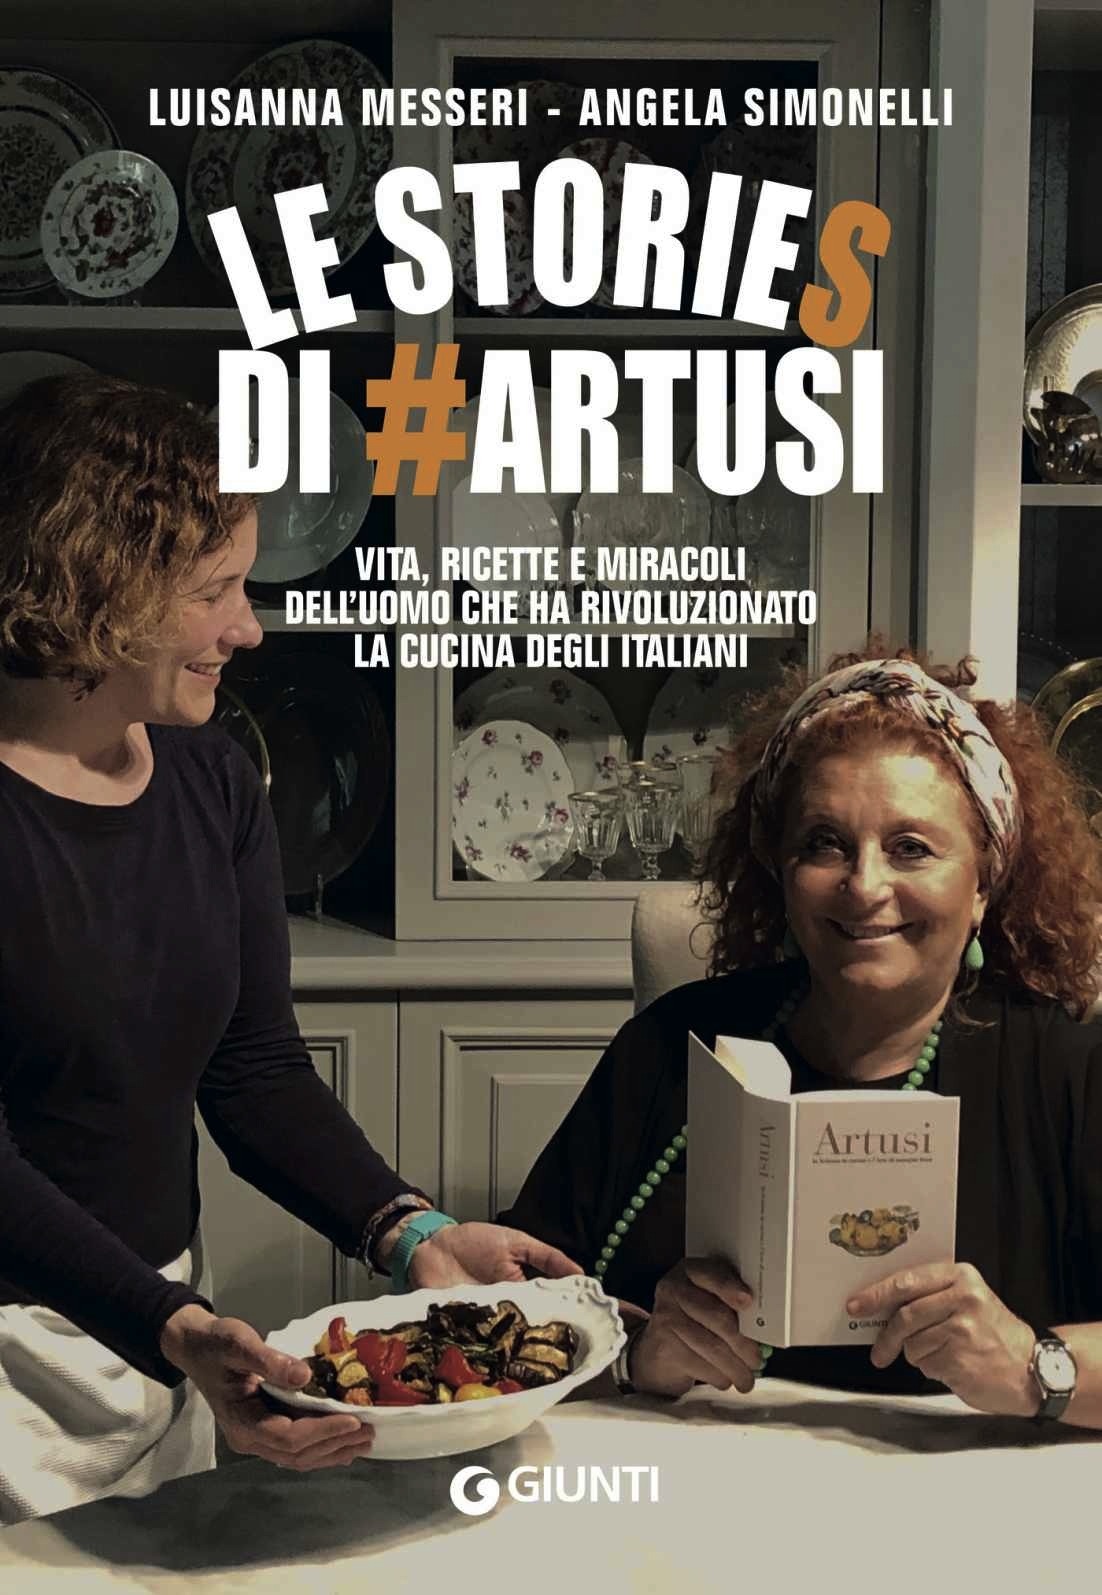 Recensione di Le Stories Di #Artusi – L. Messeri – A. Simonelli